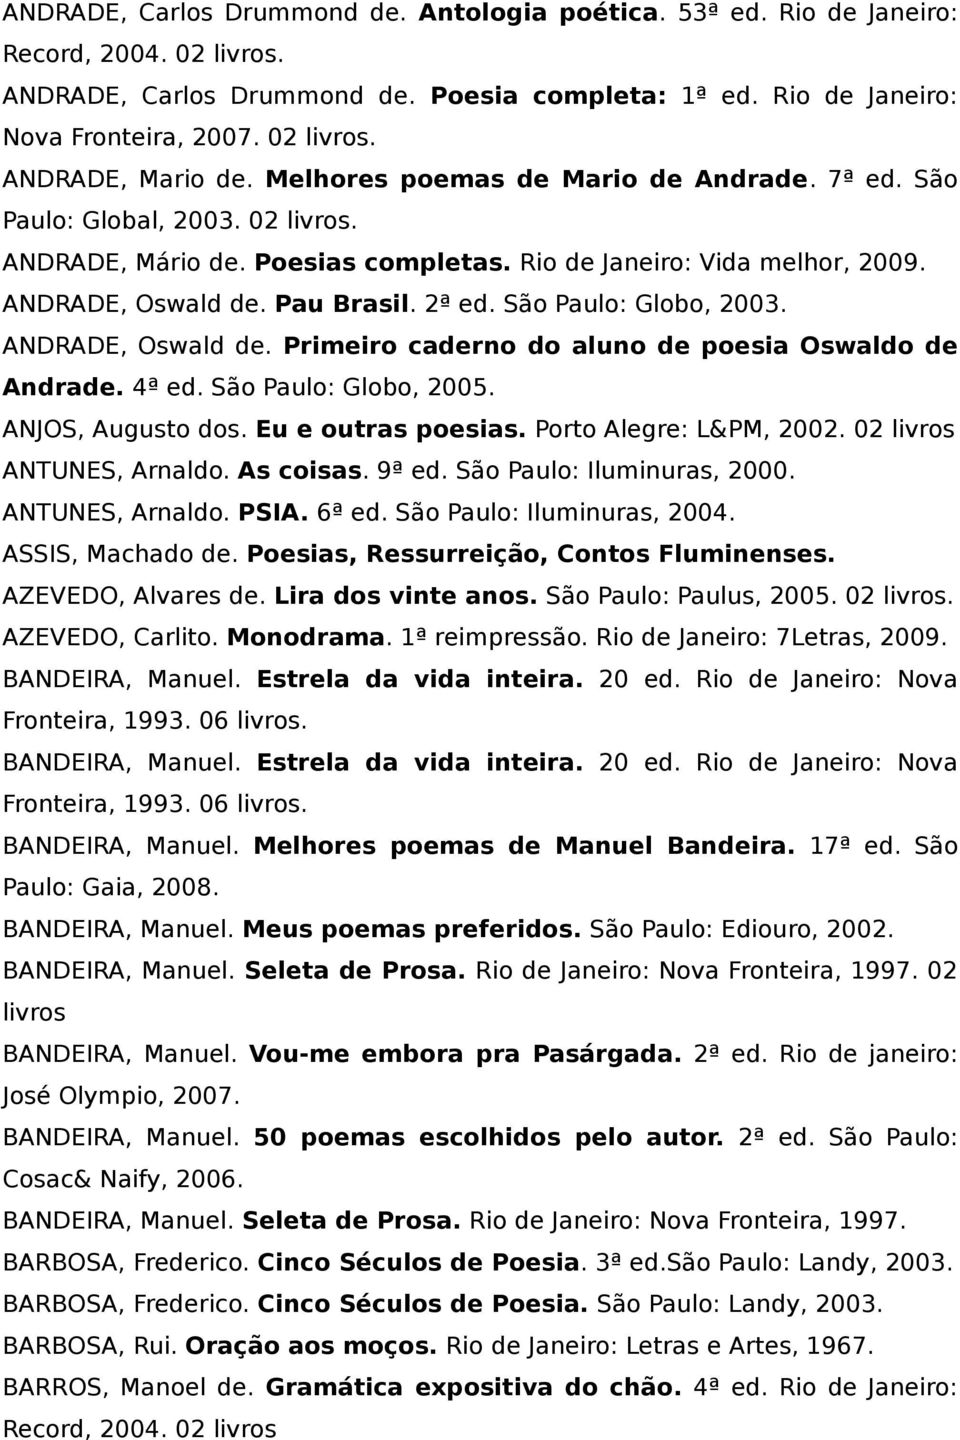 2ª ed. São Paulo: Globo, 2003. ANDRADE, Oswald de. Primeiro caderno do aluno de poesia Oswaldo de Andrade. 4ª ed. São Paulo: Globo, 2005. ANJOS, Augusto dos. Eu e outras poesias.